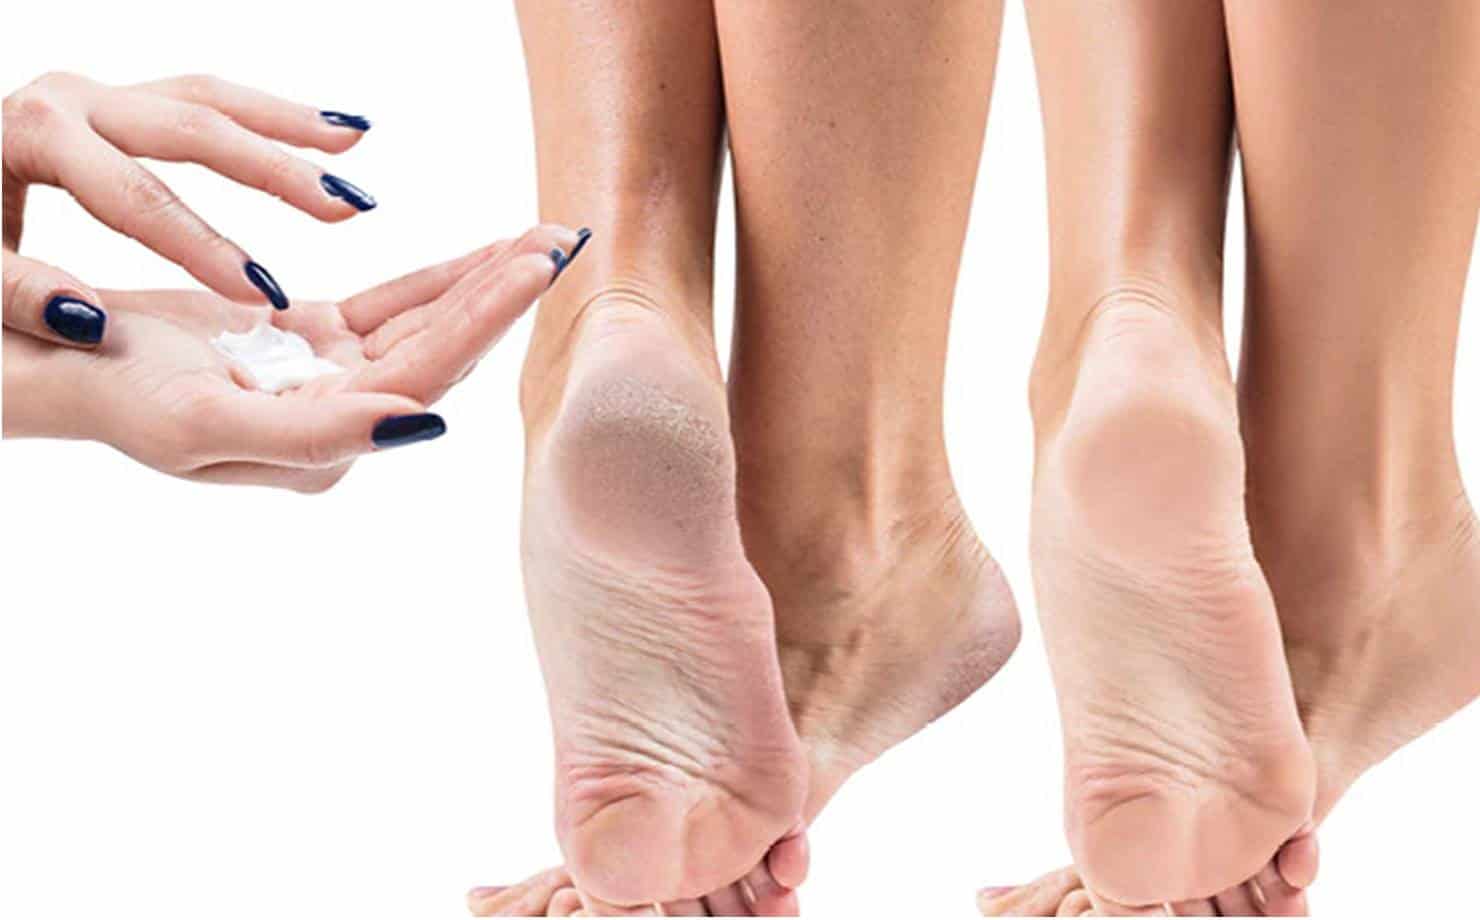 Remédio caseiro com vaselina para tratar pés secos enquanto você dorme